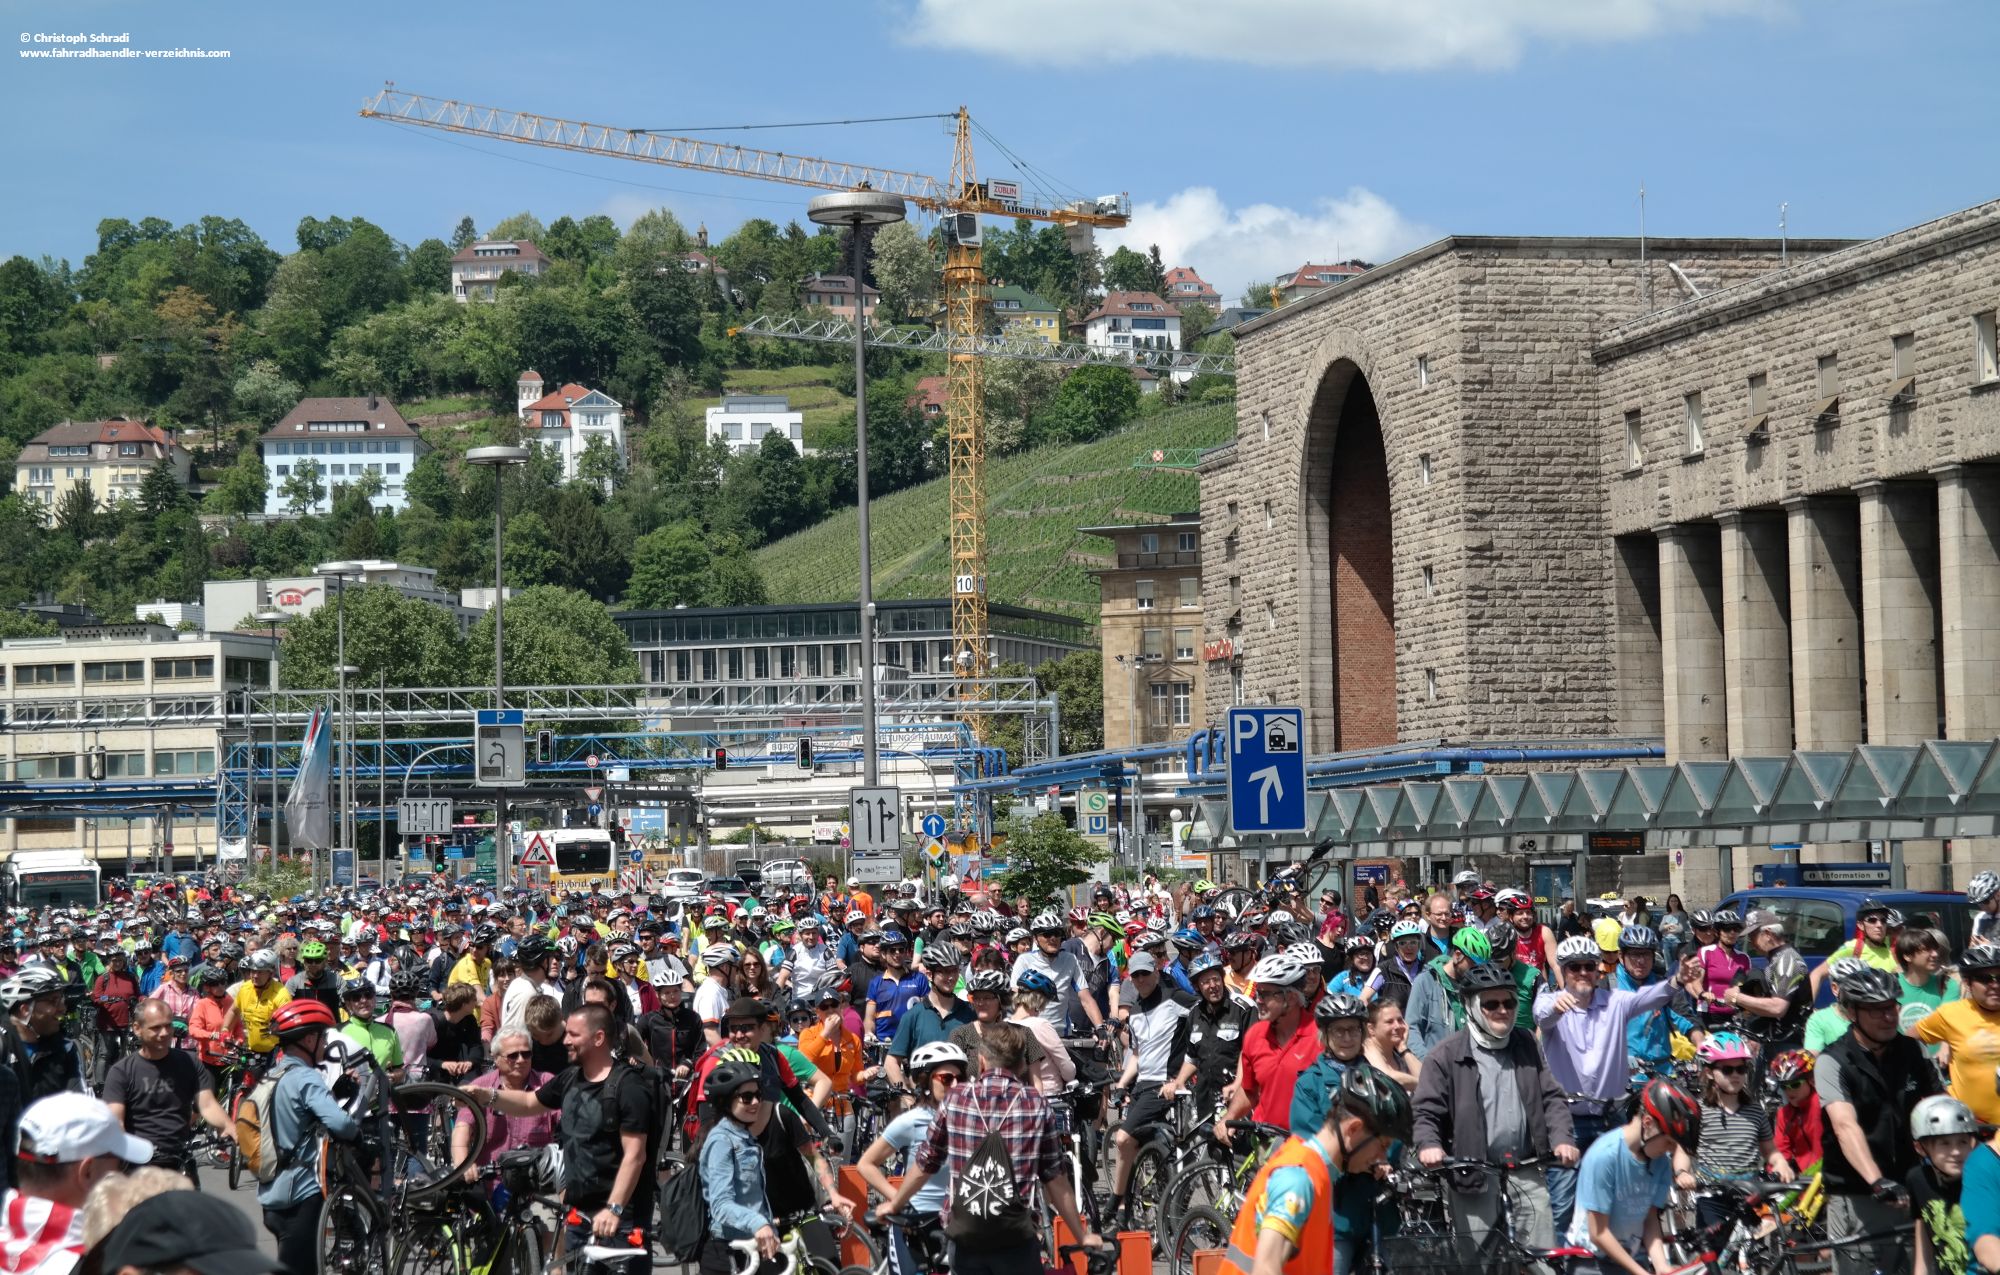 Fahrräder soweit das Auge reicht - der Hauptbahnhof Stuttgart war am 21.05.2017 mit Radfahrern nur so zugepflastert